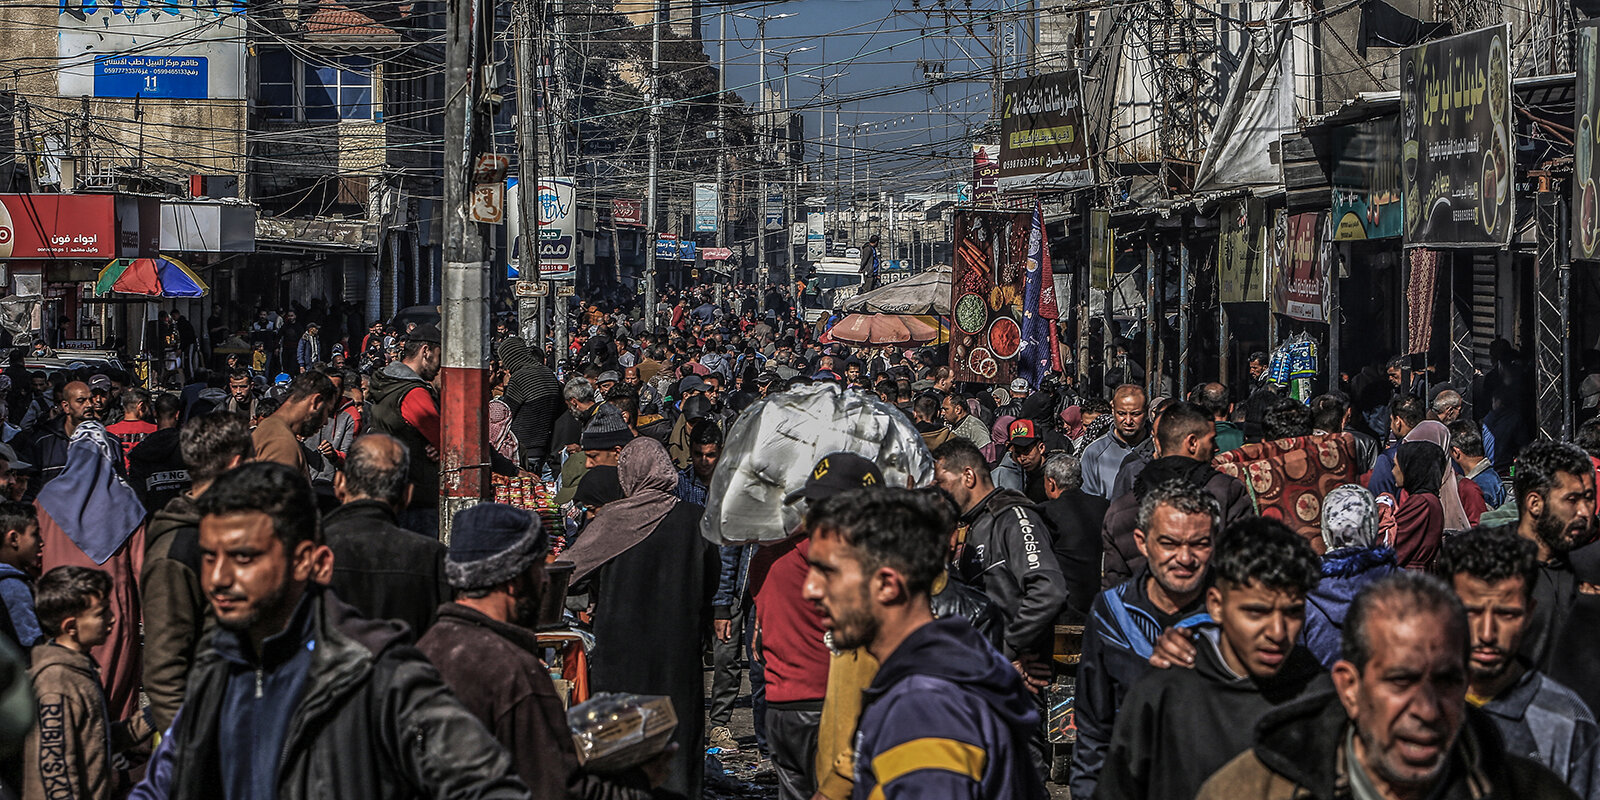 Schätzungsweis 1,5 Millioune Mënschen hale sech den Ament zu Rafah op | © picture alliance/dpa | Abed Rahim Khatib